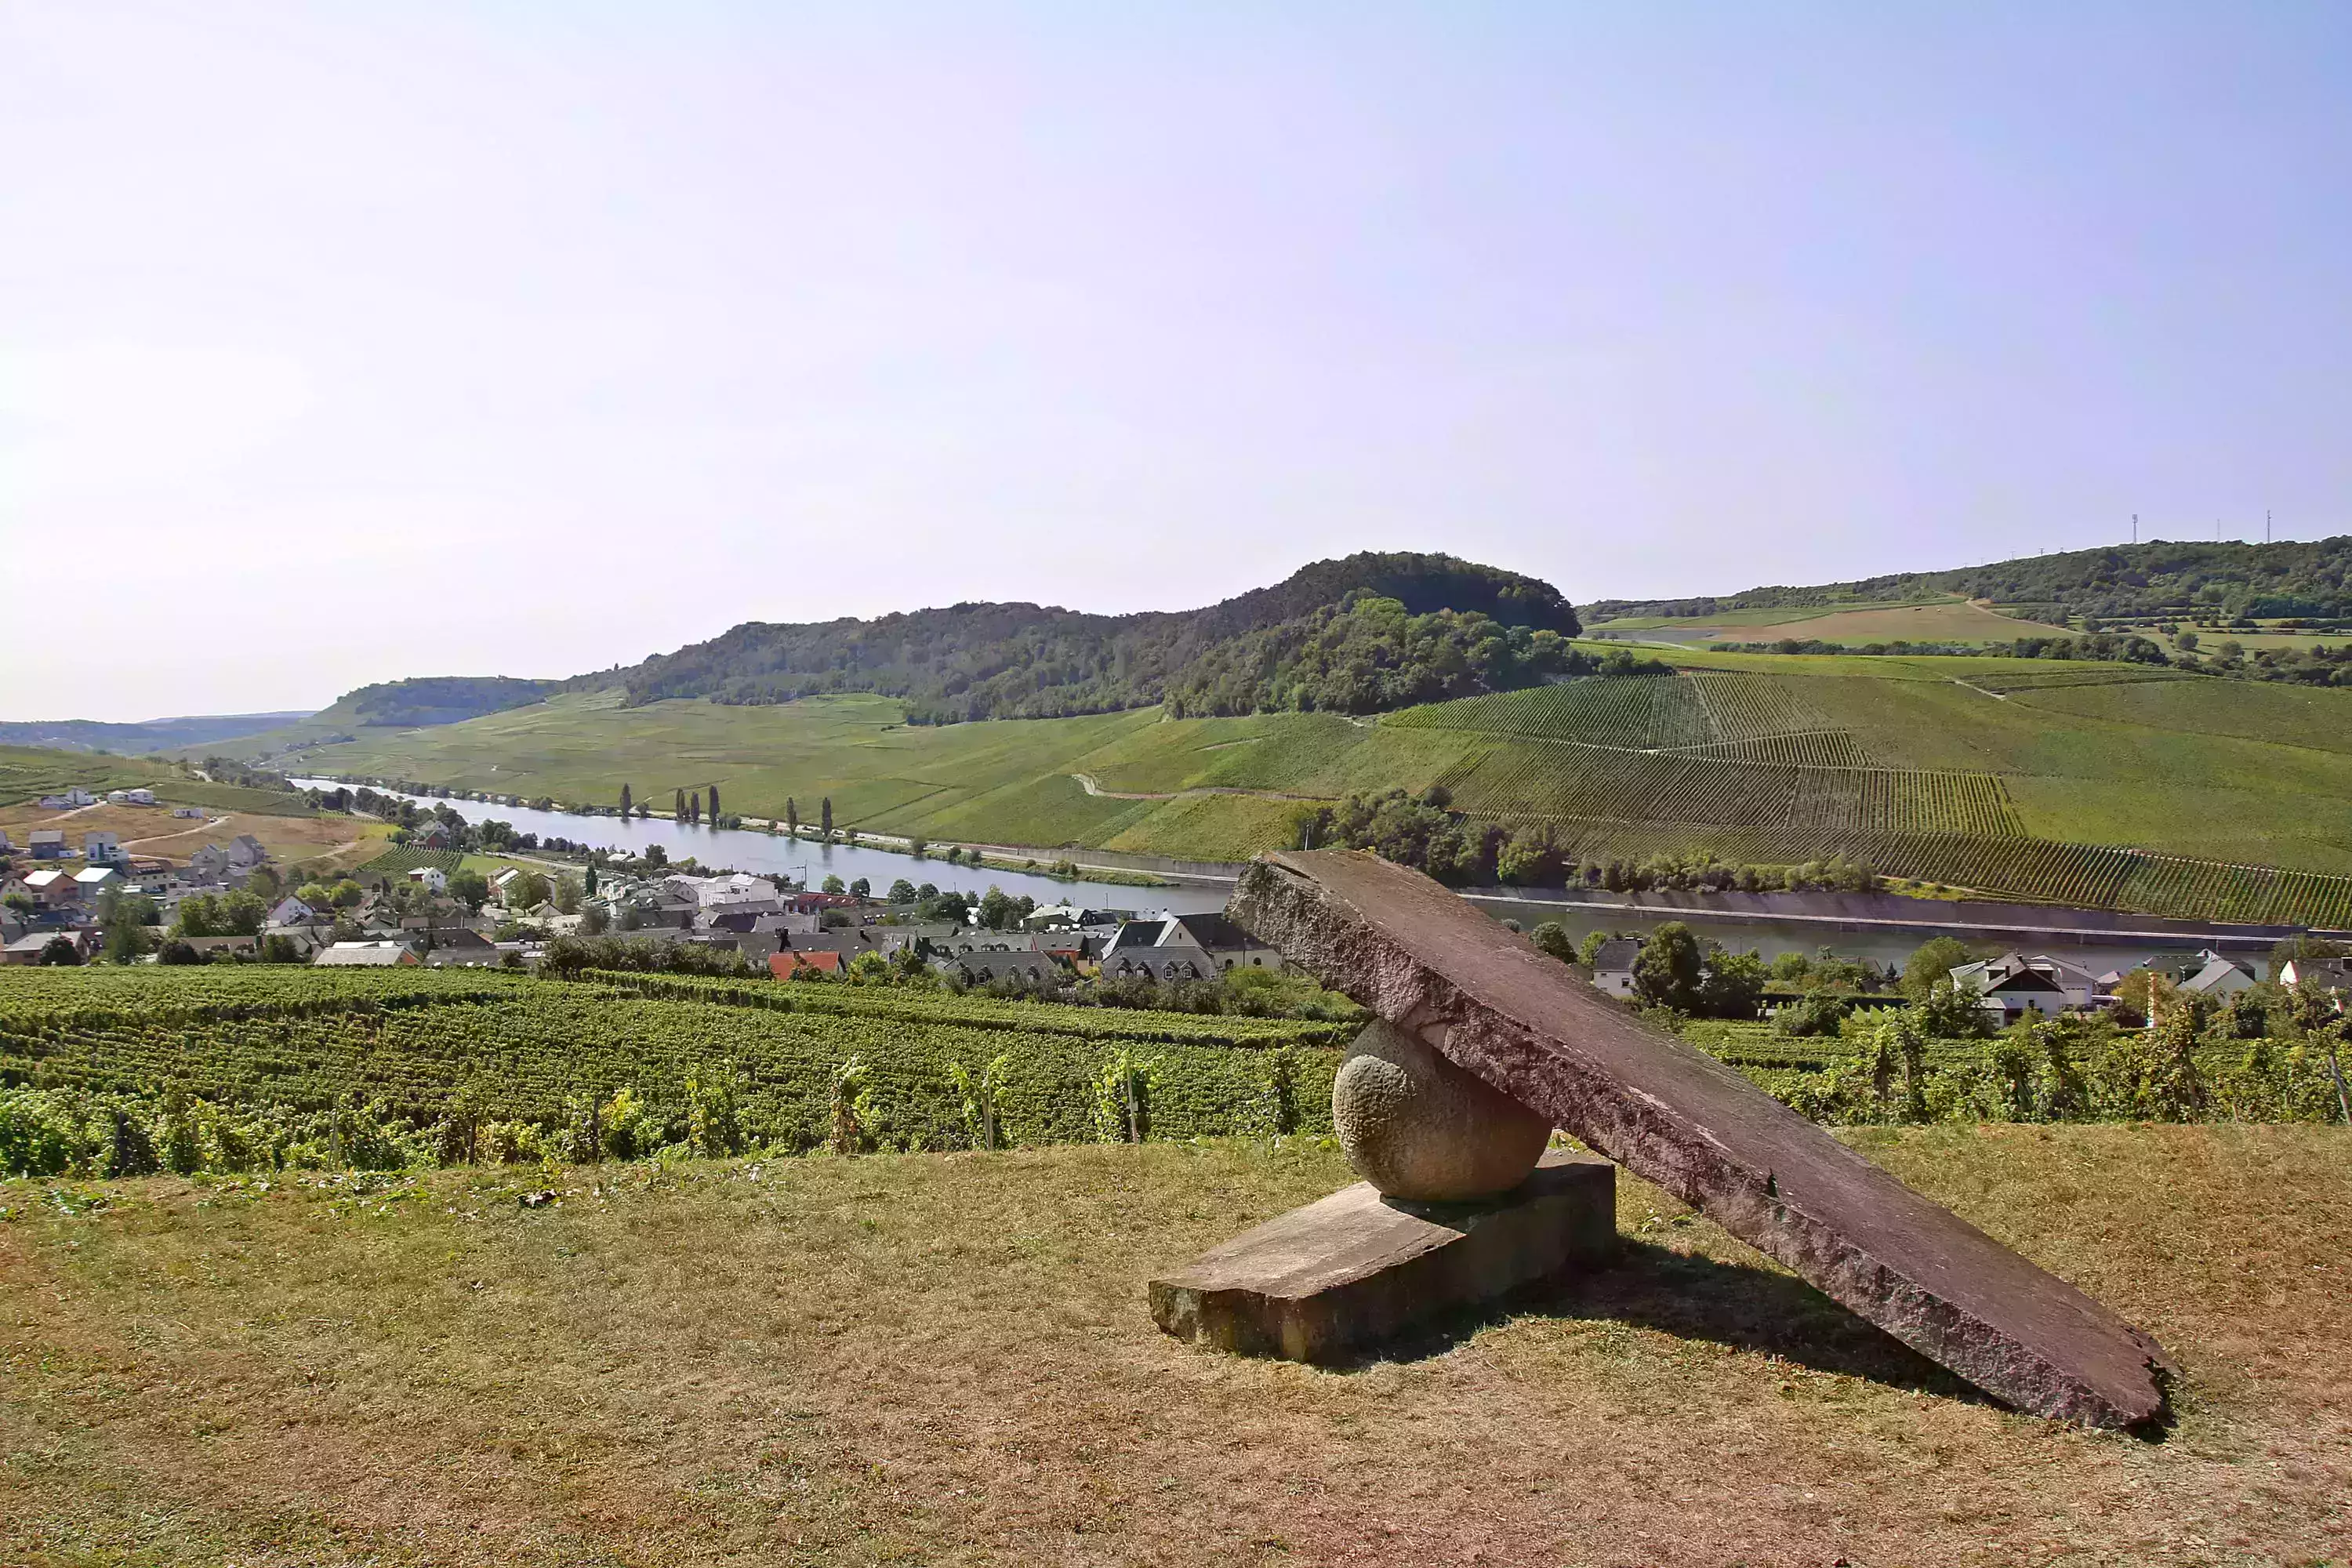 Skulptur im Weinberg, welche die Flussbiegung der Mosel an dieser Stelle verdeutlichen soll